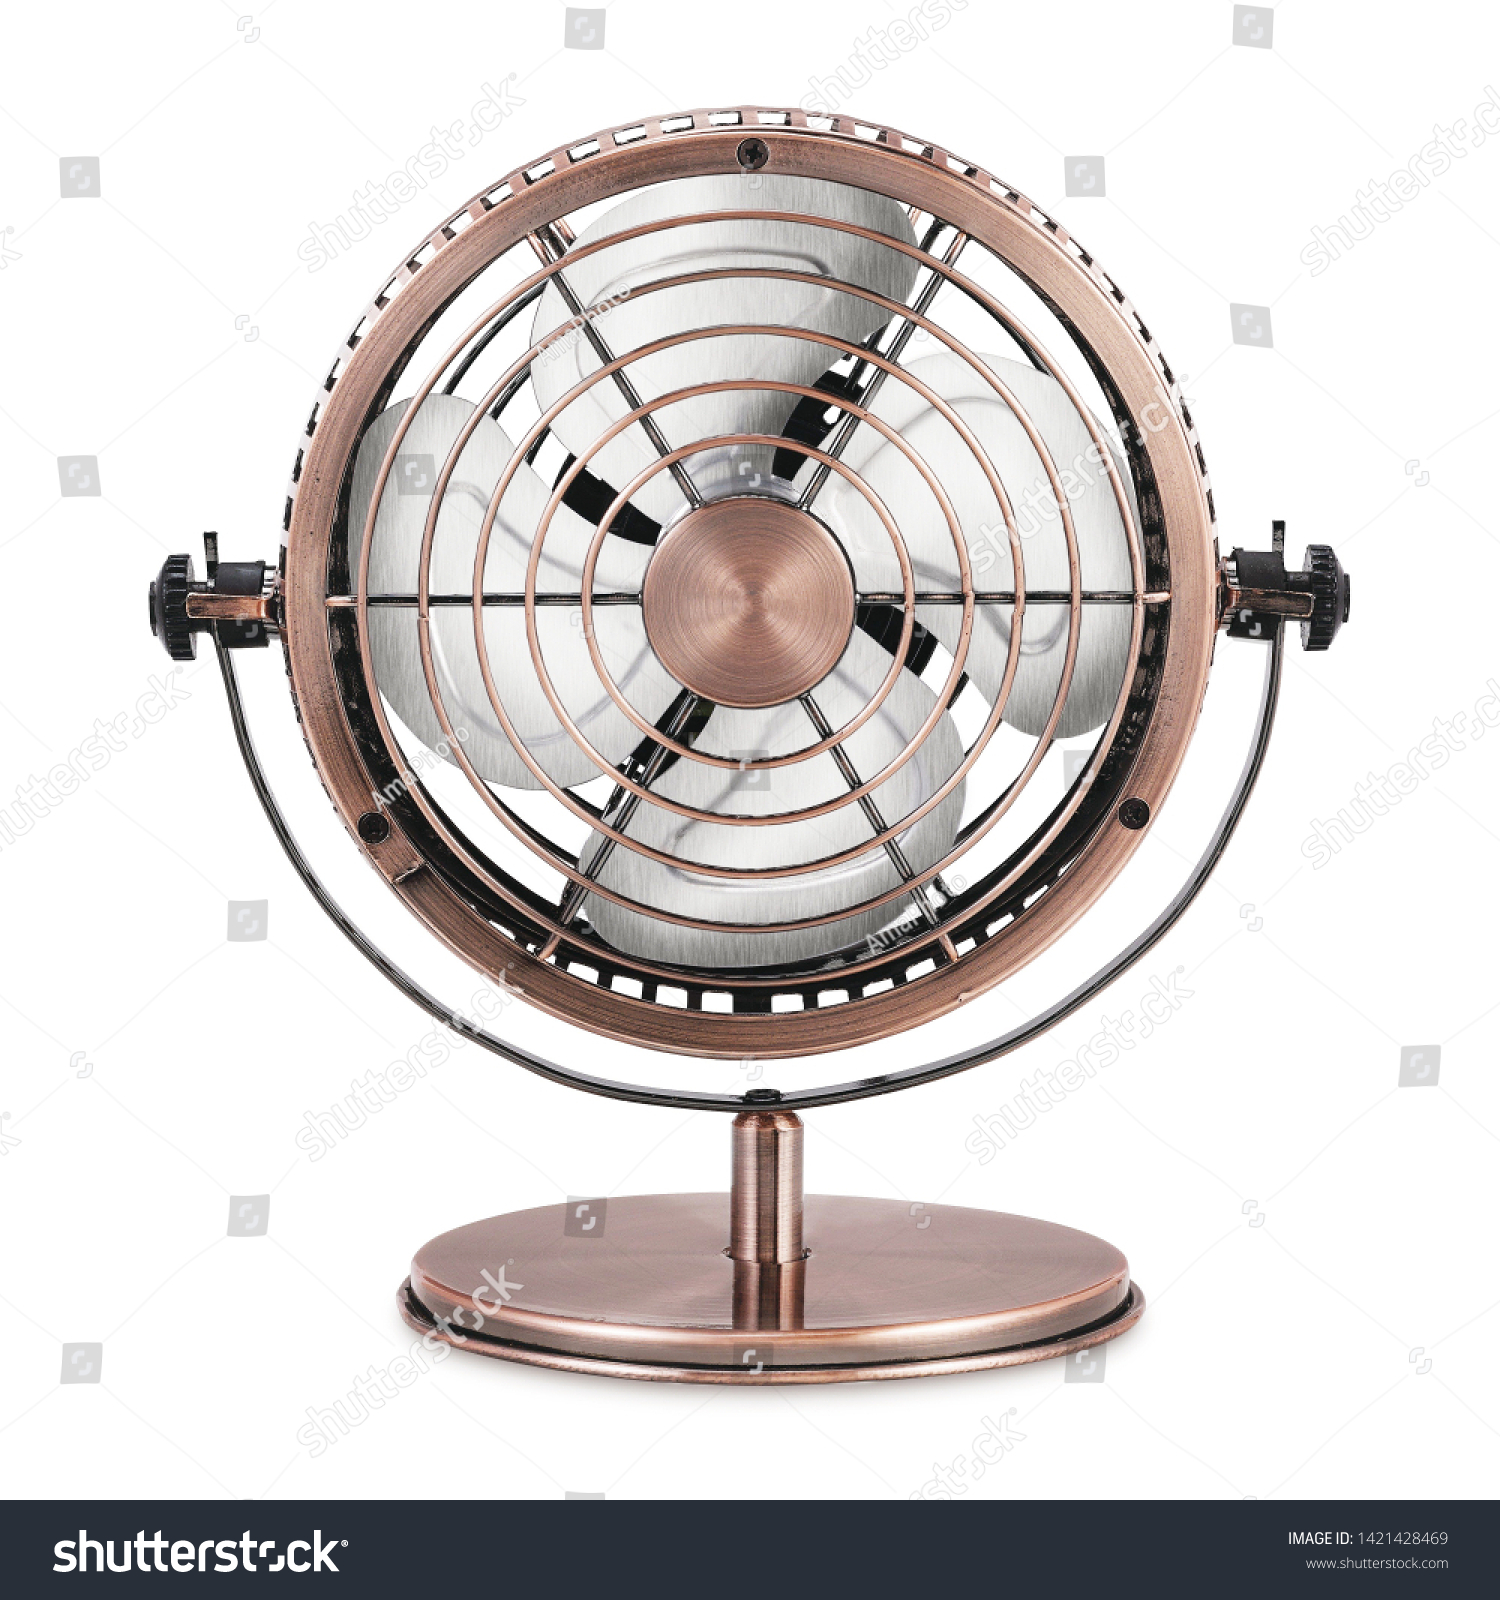 small metal table fan